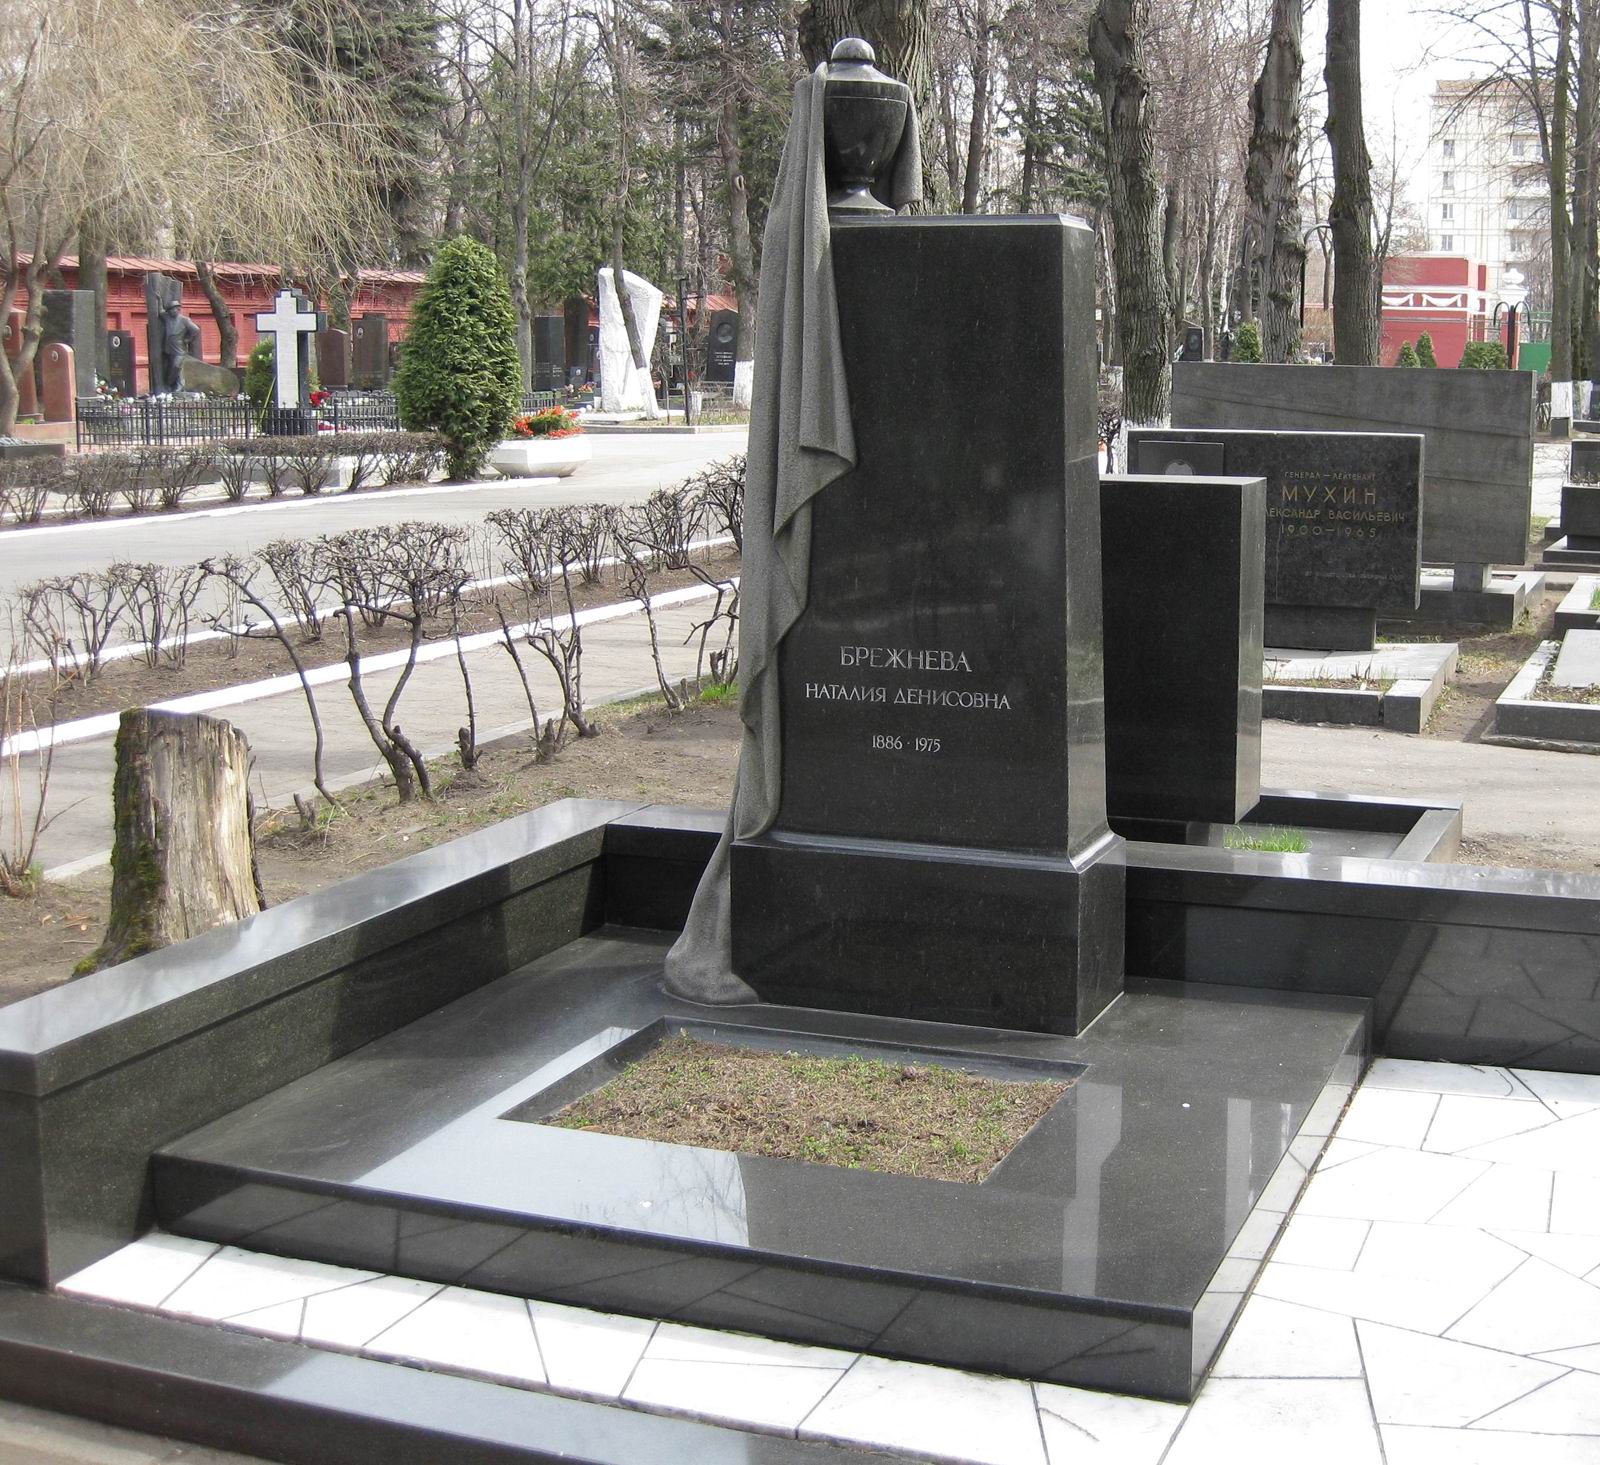 Памятник на могиле Брежневой Н.Д. (1886-1975), ск. В.Сонин, арх. С.Кулев, на Новодевичьем кладбище (6-28-1).